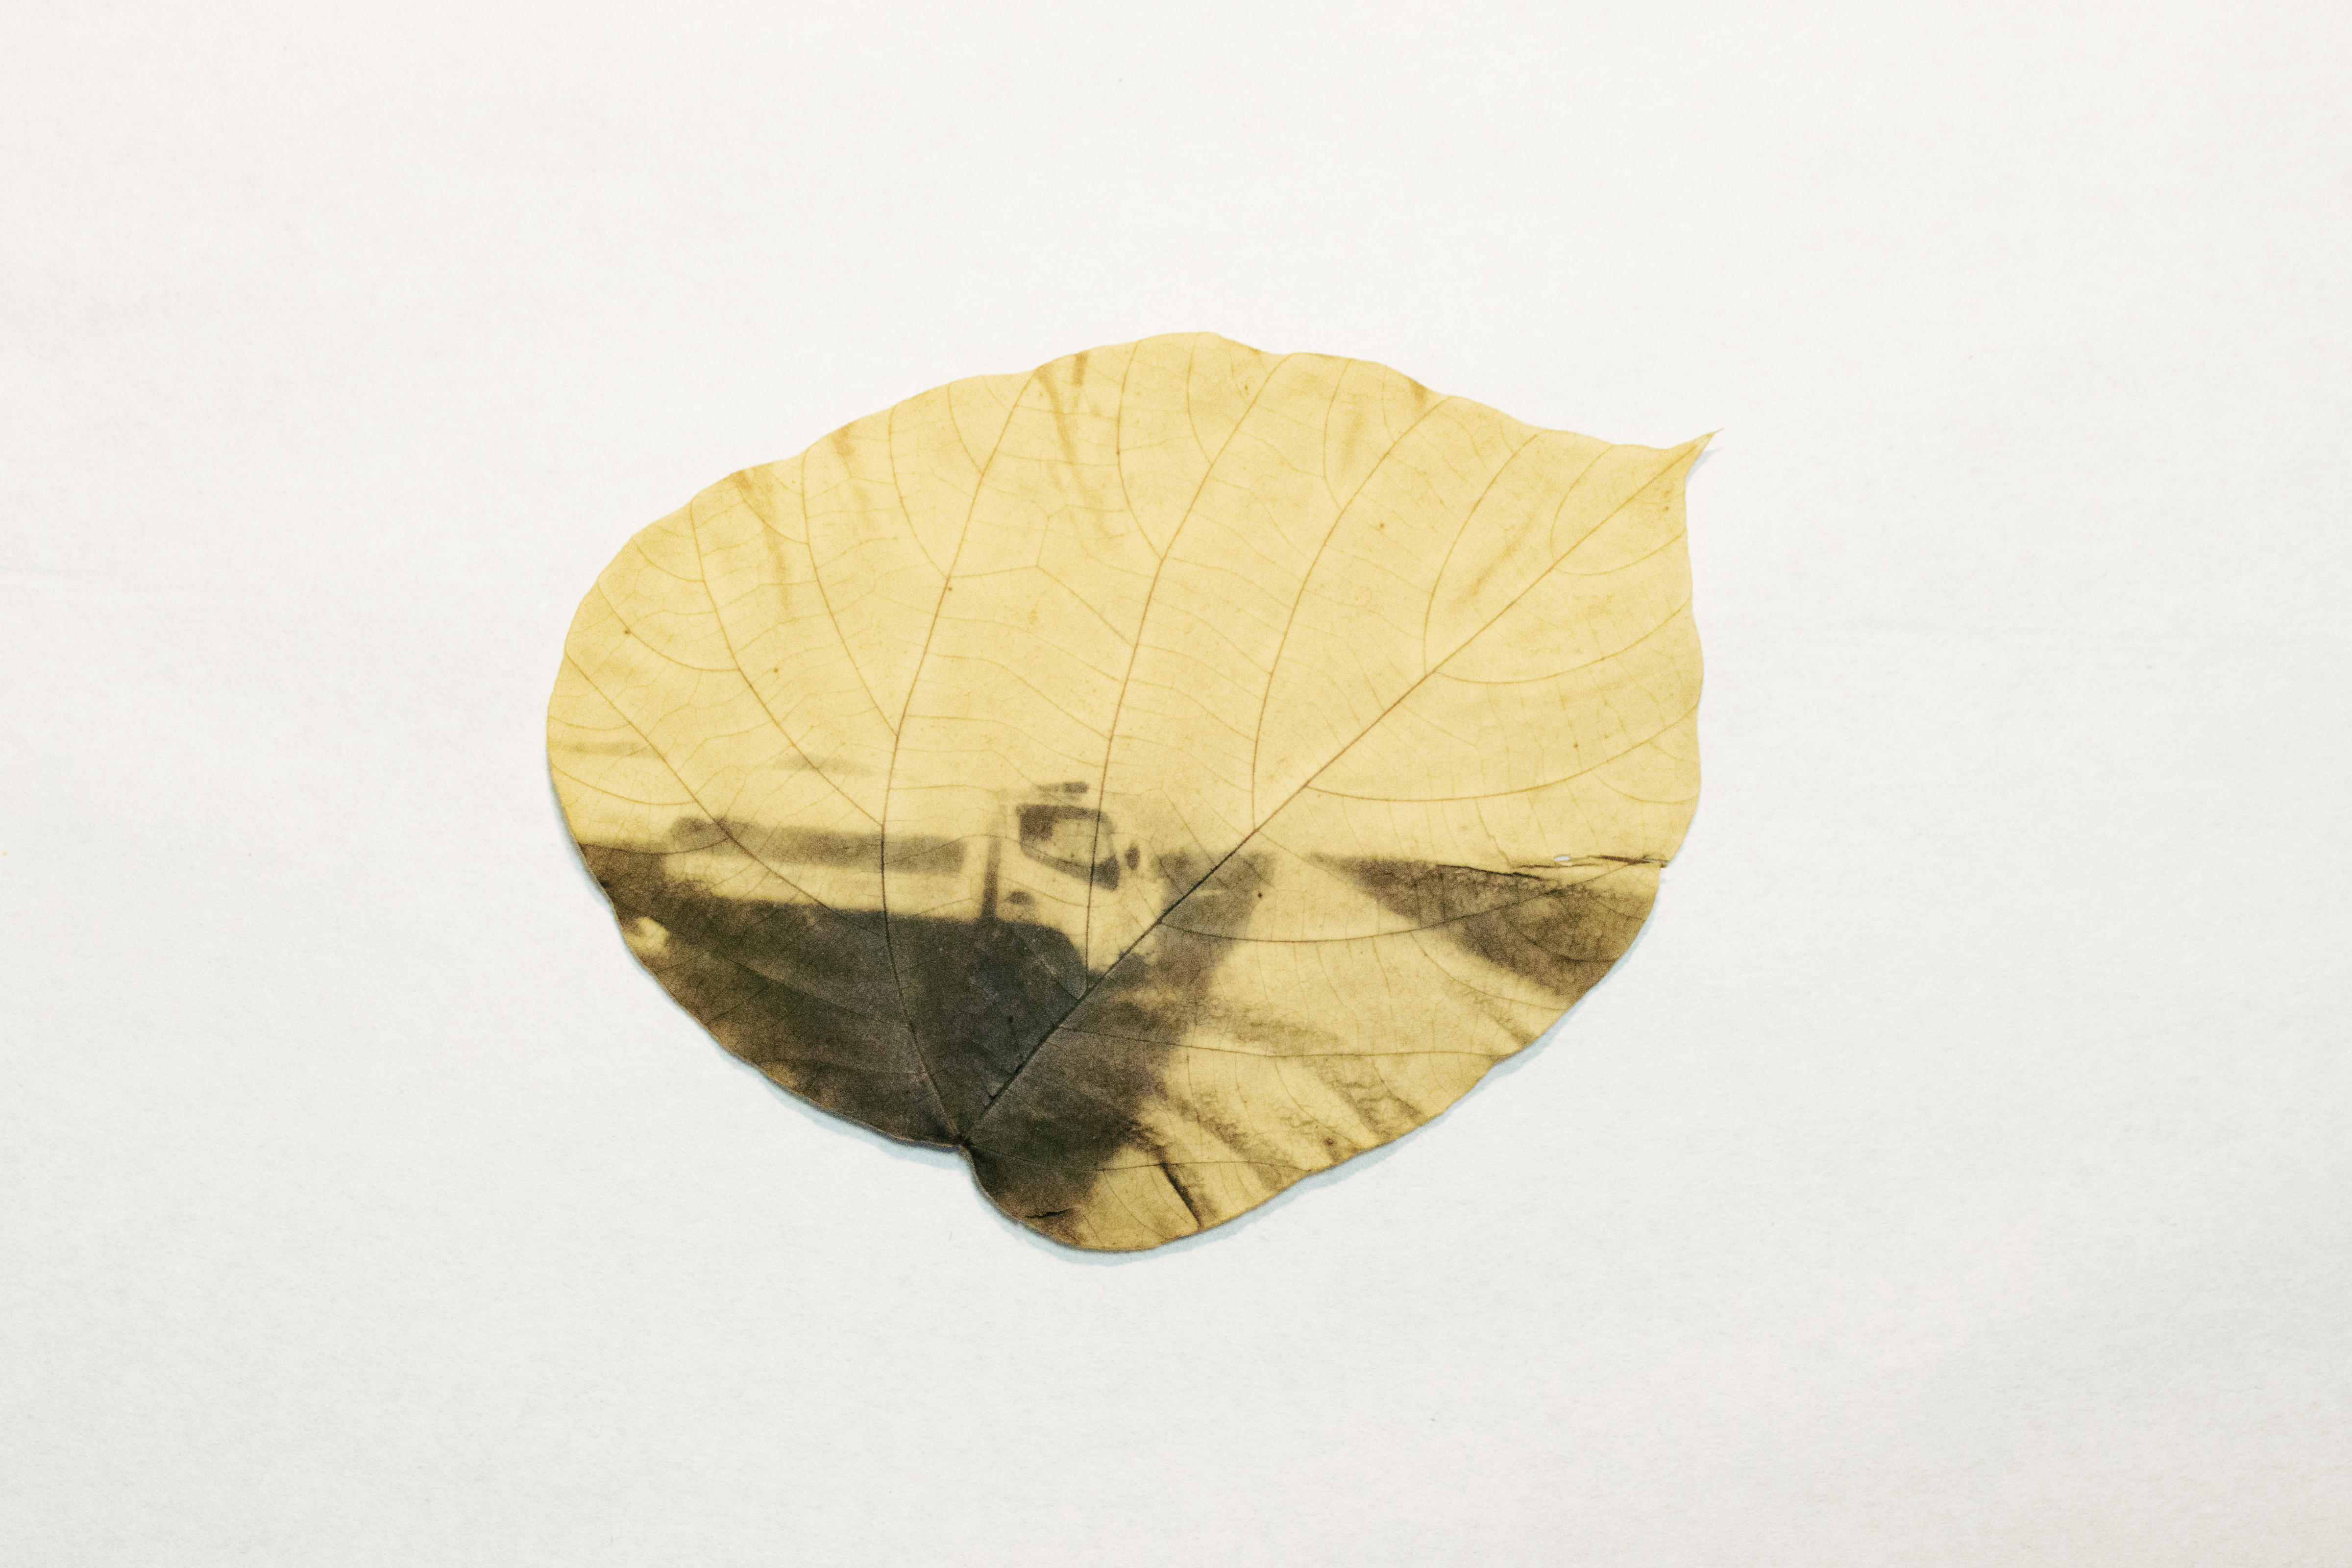 Японка печатает фотографии на листьях деревьев… Вот что получается Хм, такого еще не было!